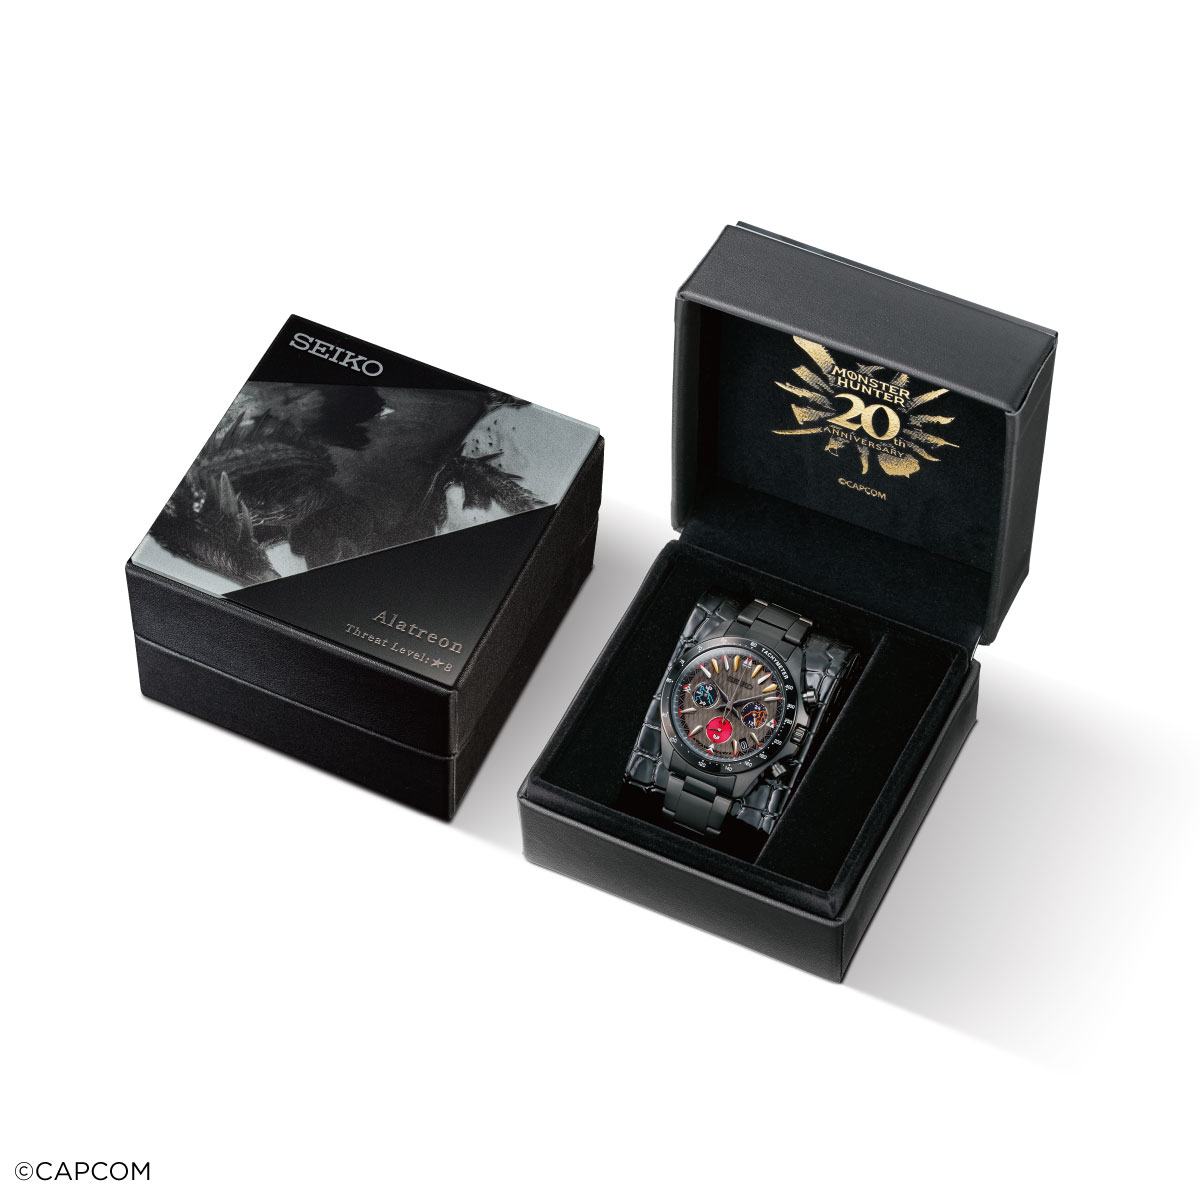 精工推出《魔物獵人》20周年聯名限定手錶限量2000